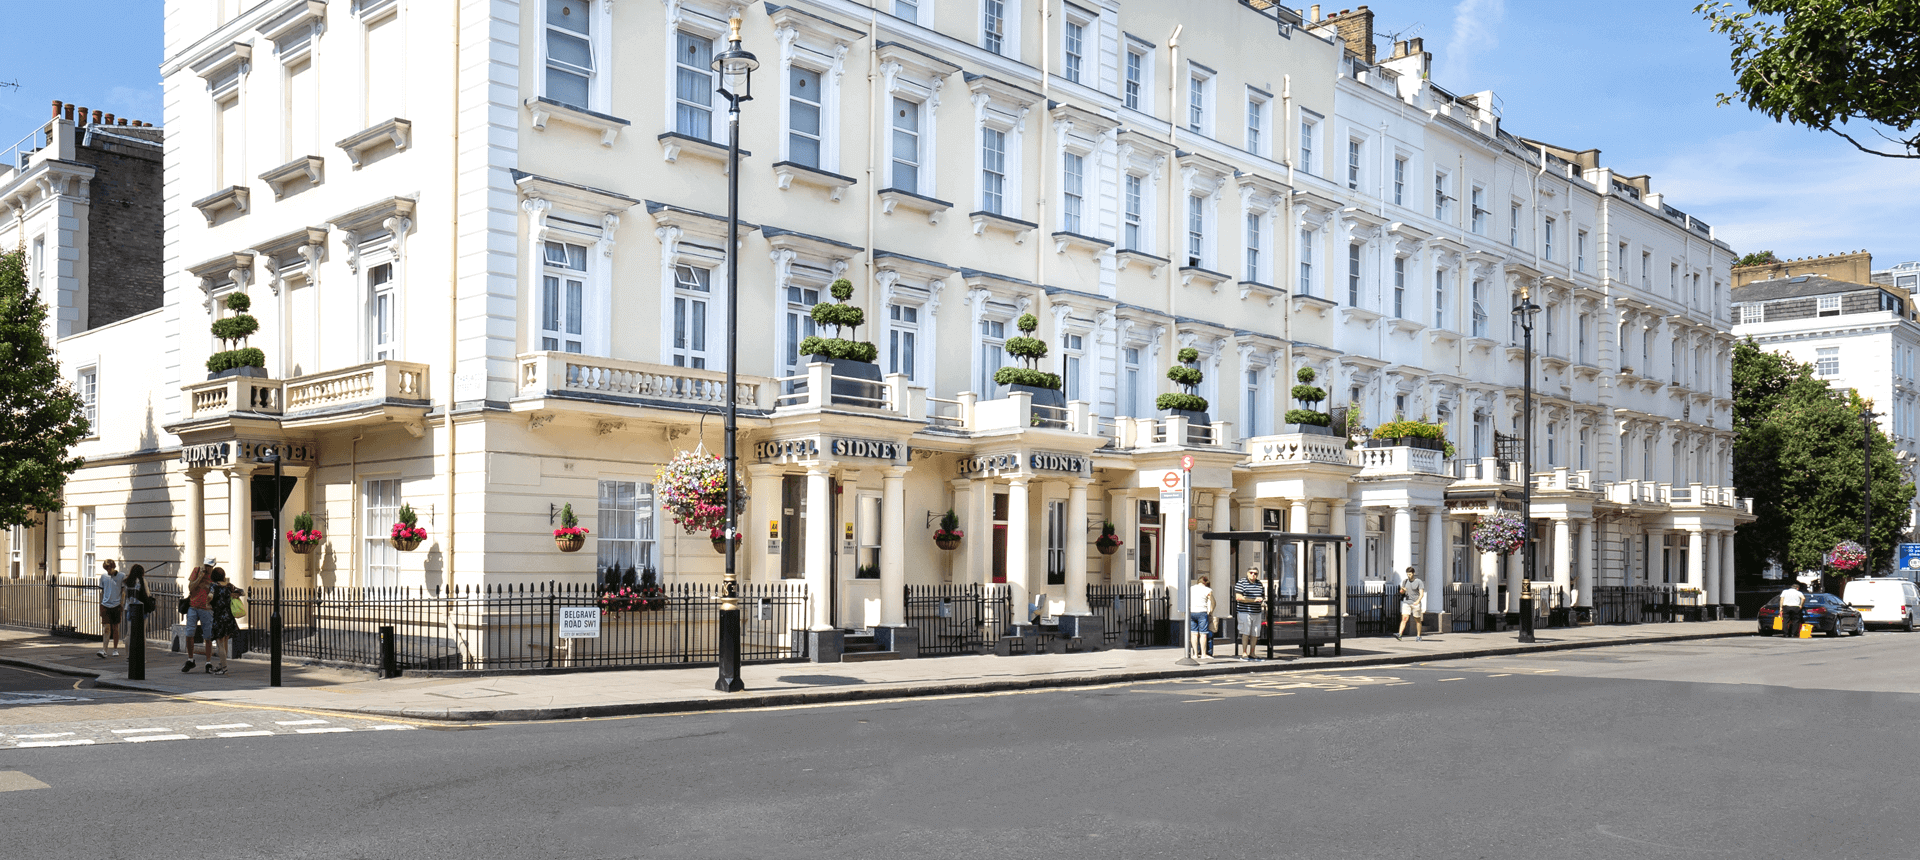 Sidney Hotel in London